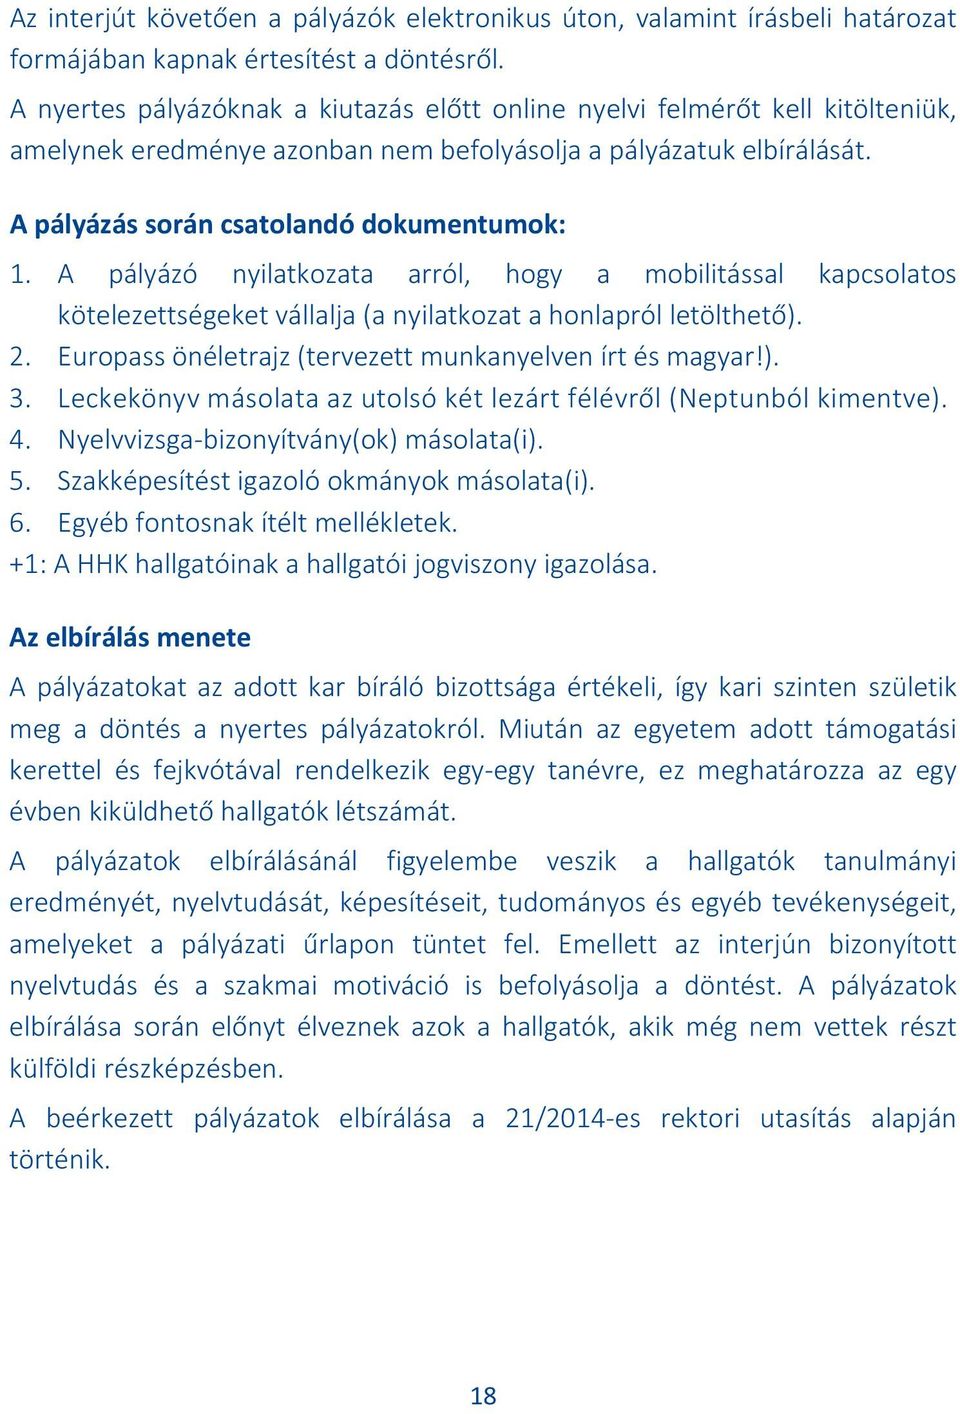 A pályázó nyilatkozata arról, hogy a mobilitással kapcsolatos kötelezettségeket vállalja (a nyilatkozat a honlapról letölthető). 2. Europass önéletrajz (tervezett munkanyelven írt és magyar!). 3.